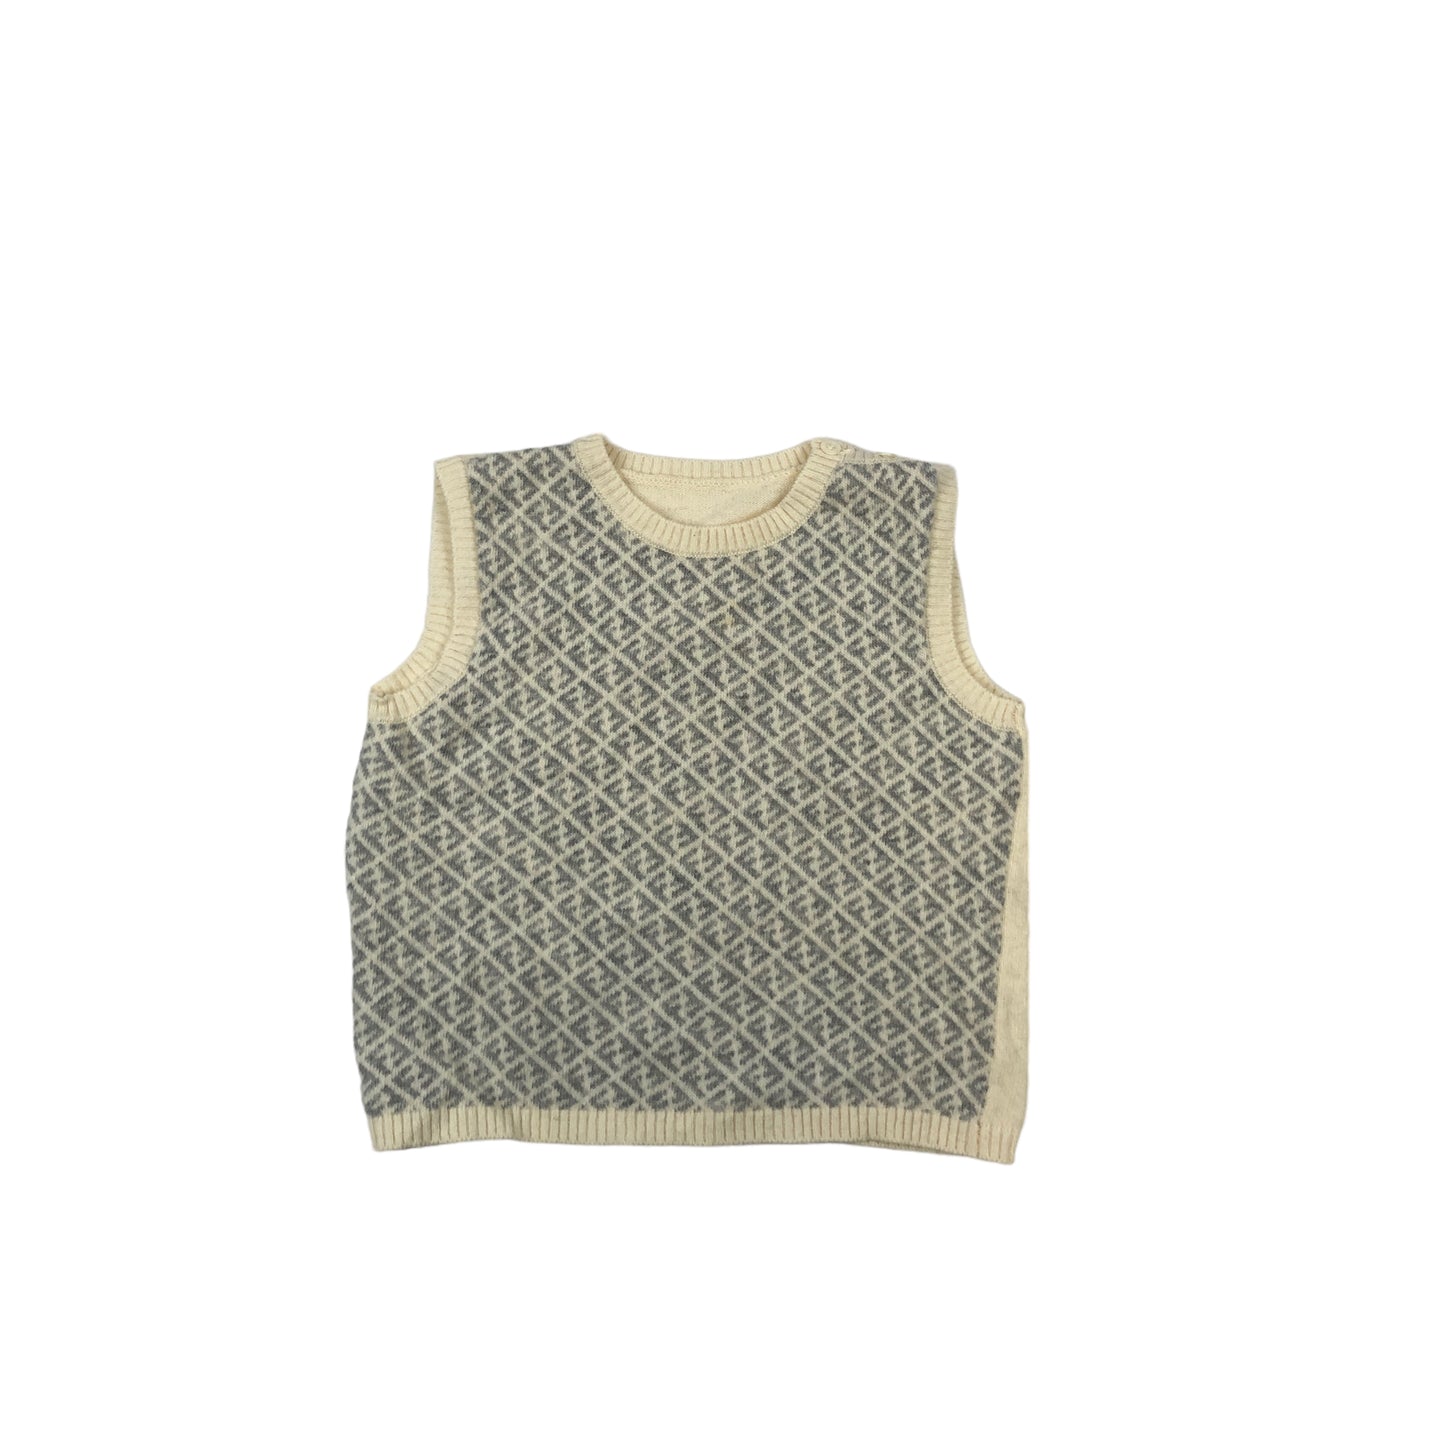 Vintage Fendi Sweater Vest (Age 4-5)